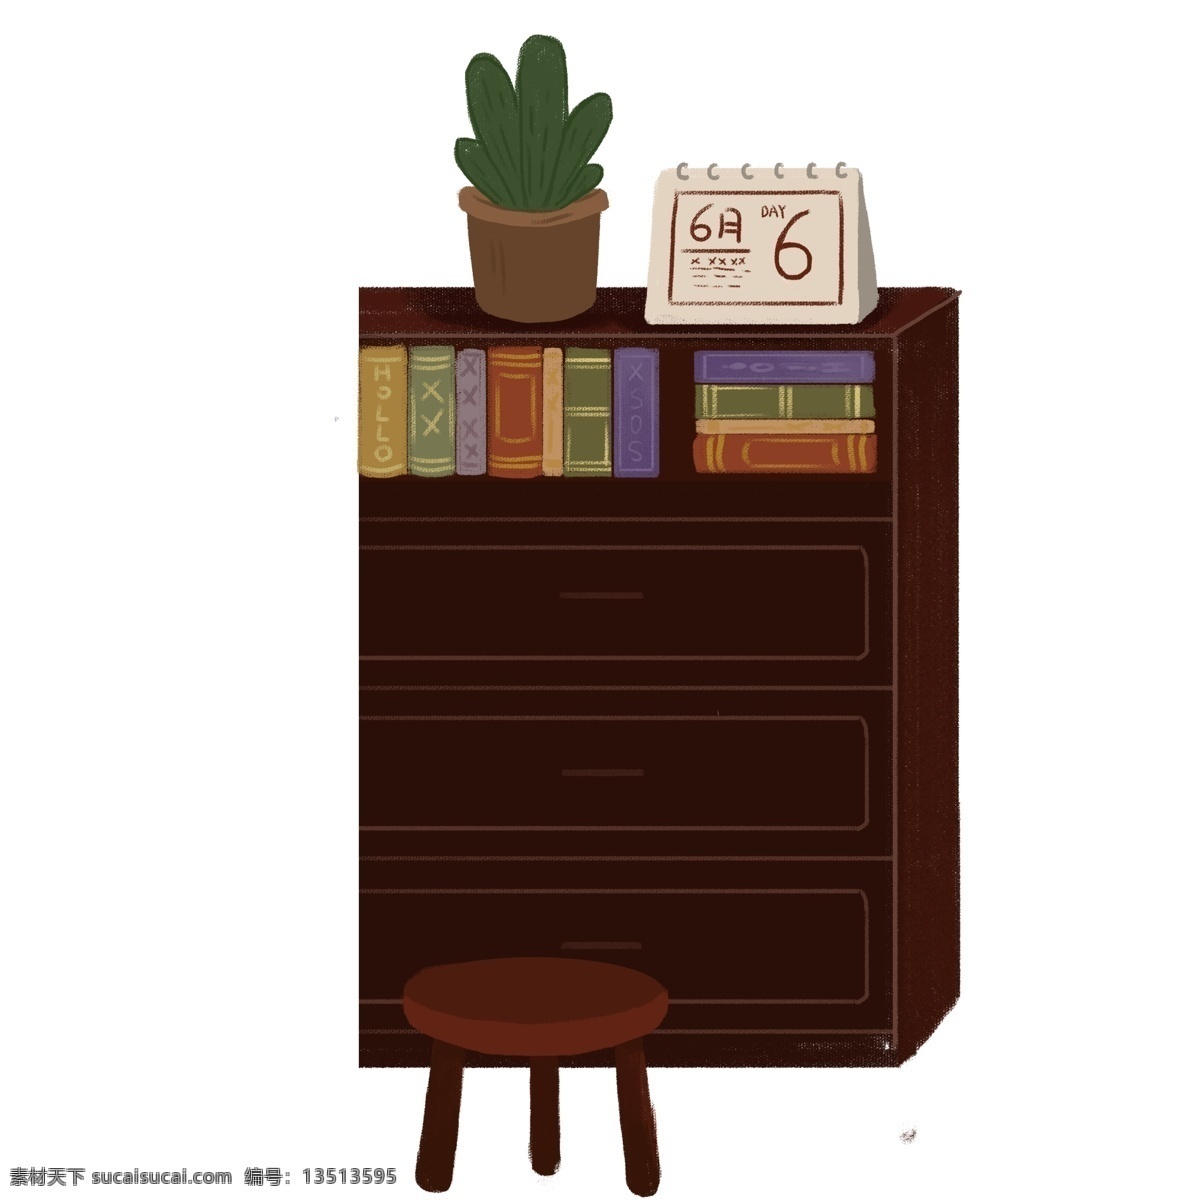 棕色 书柜 盆栽 元素 柜子 家具 凳子 绿植 日历 手绘 简约 psd元素 免抠元素